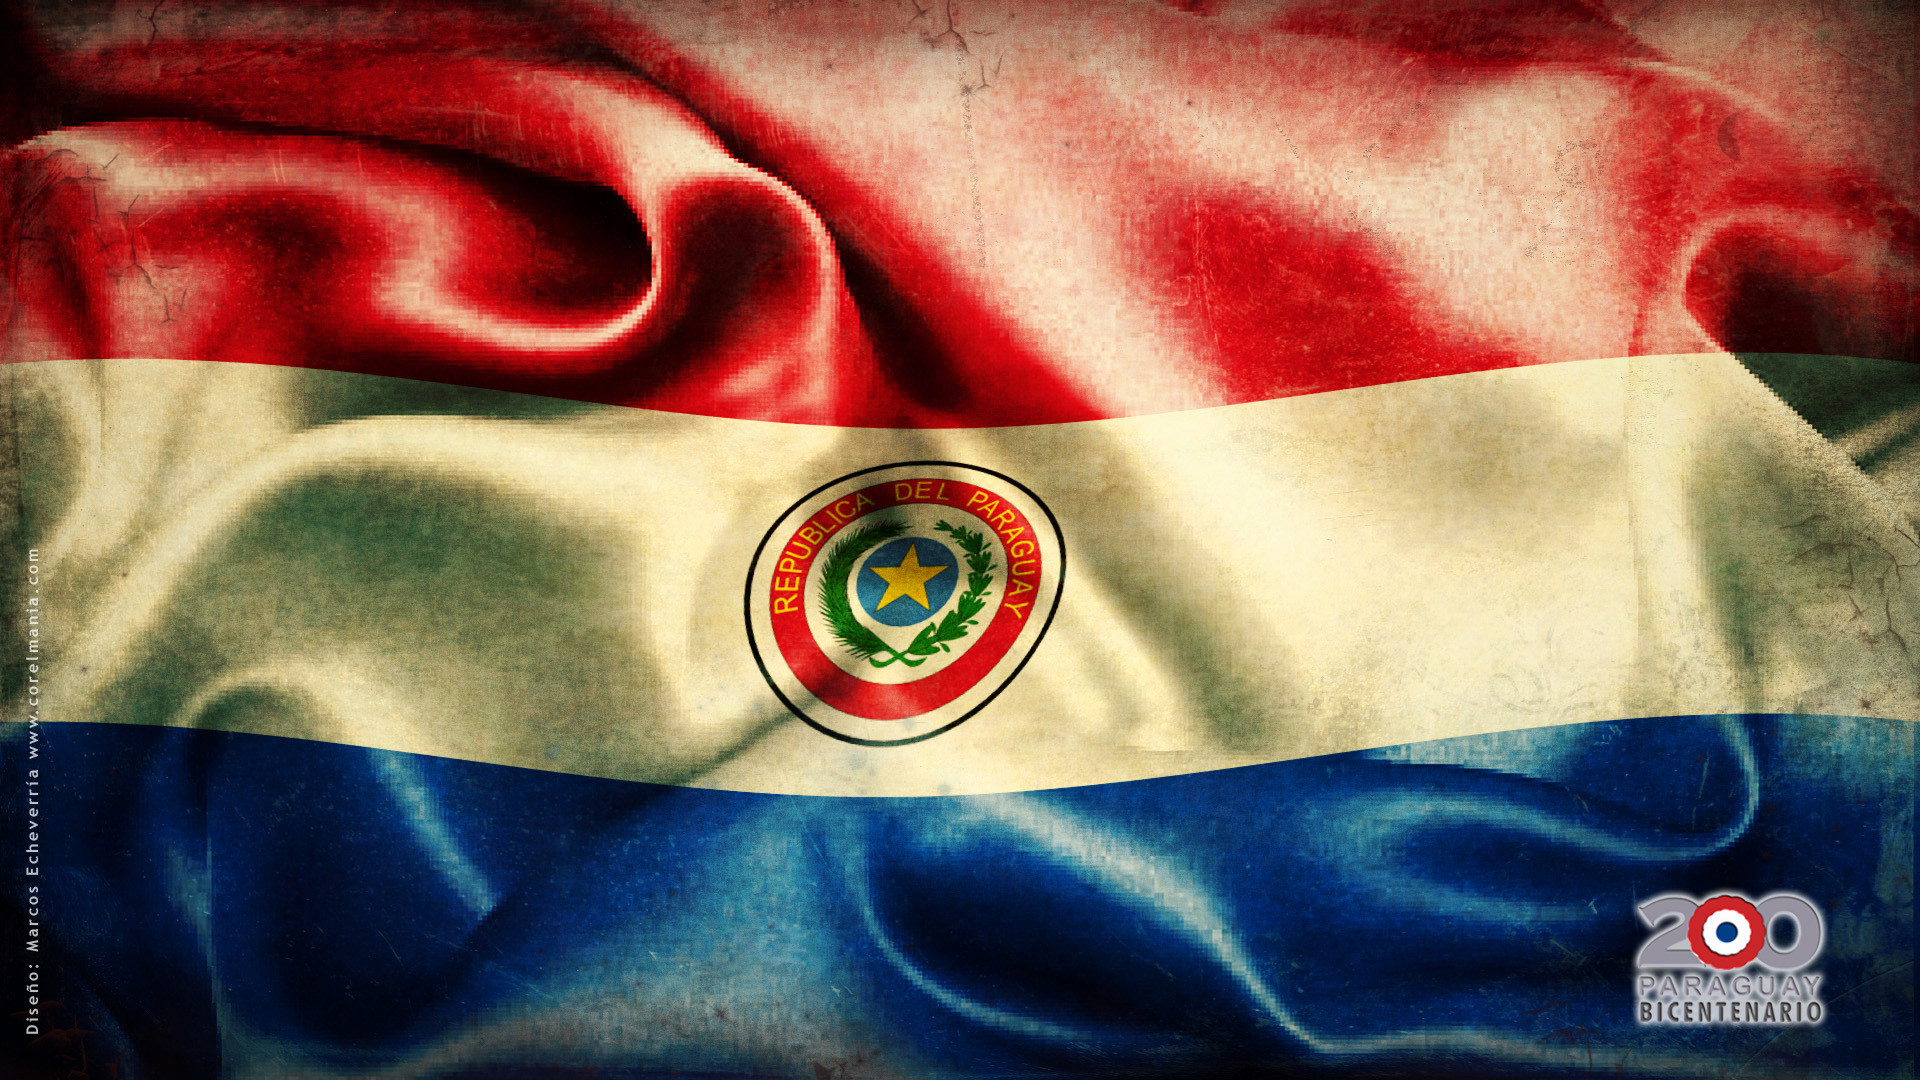 1920x1080 bandera, flag, baderas, paraguay | Banderas del mundo, Flags of the world |  Pinterest | Flags